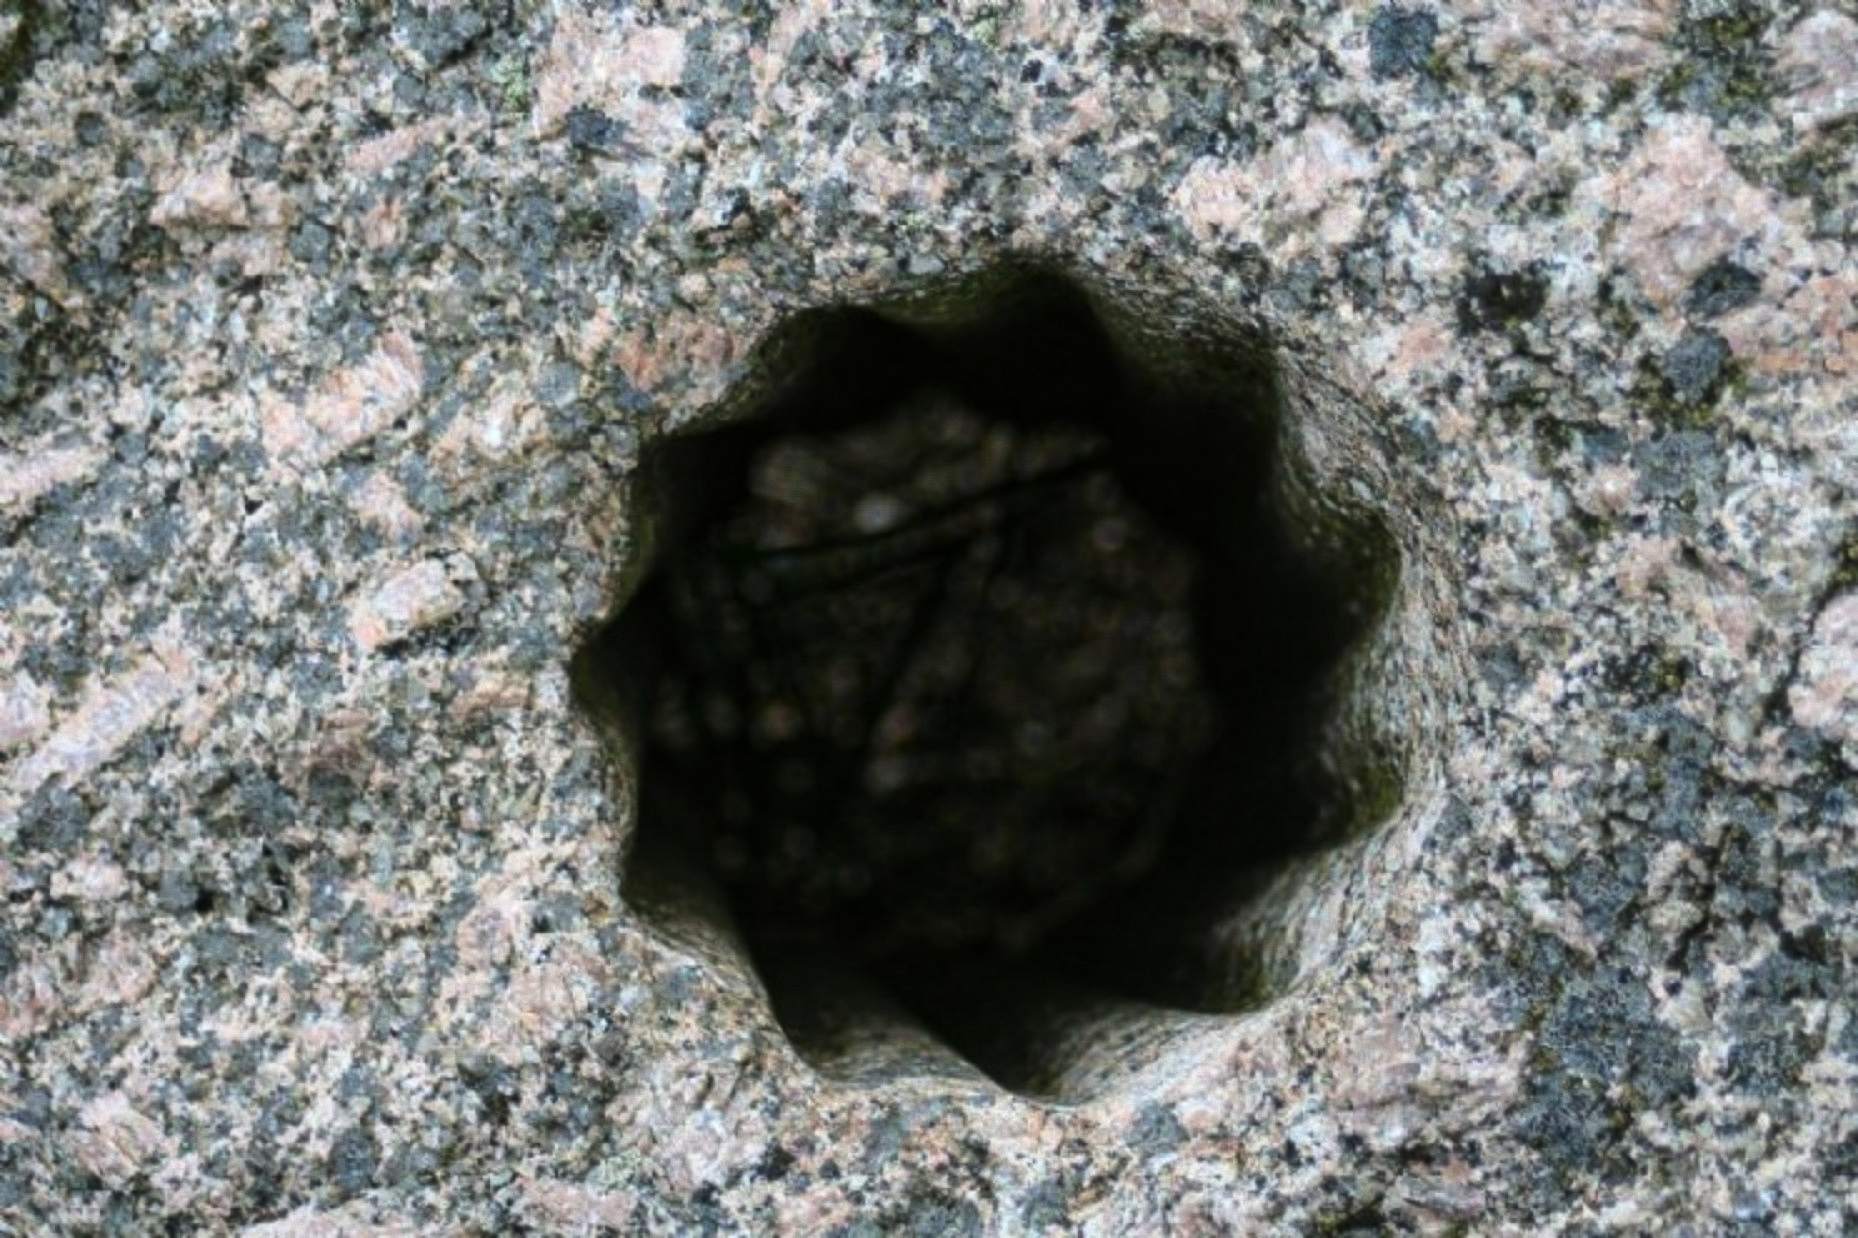 Ove čudne, drevne rupe u obliku zvijezde pronađene su uklesane u tvrdi kamen u Voldi u Norveškoj – gradu koji je nekoć bio dom brojnim nordijskim doseljenicima, a danas je naveden kao jedno od najvažnijih nalazišta za arheologe u zemlji.